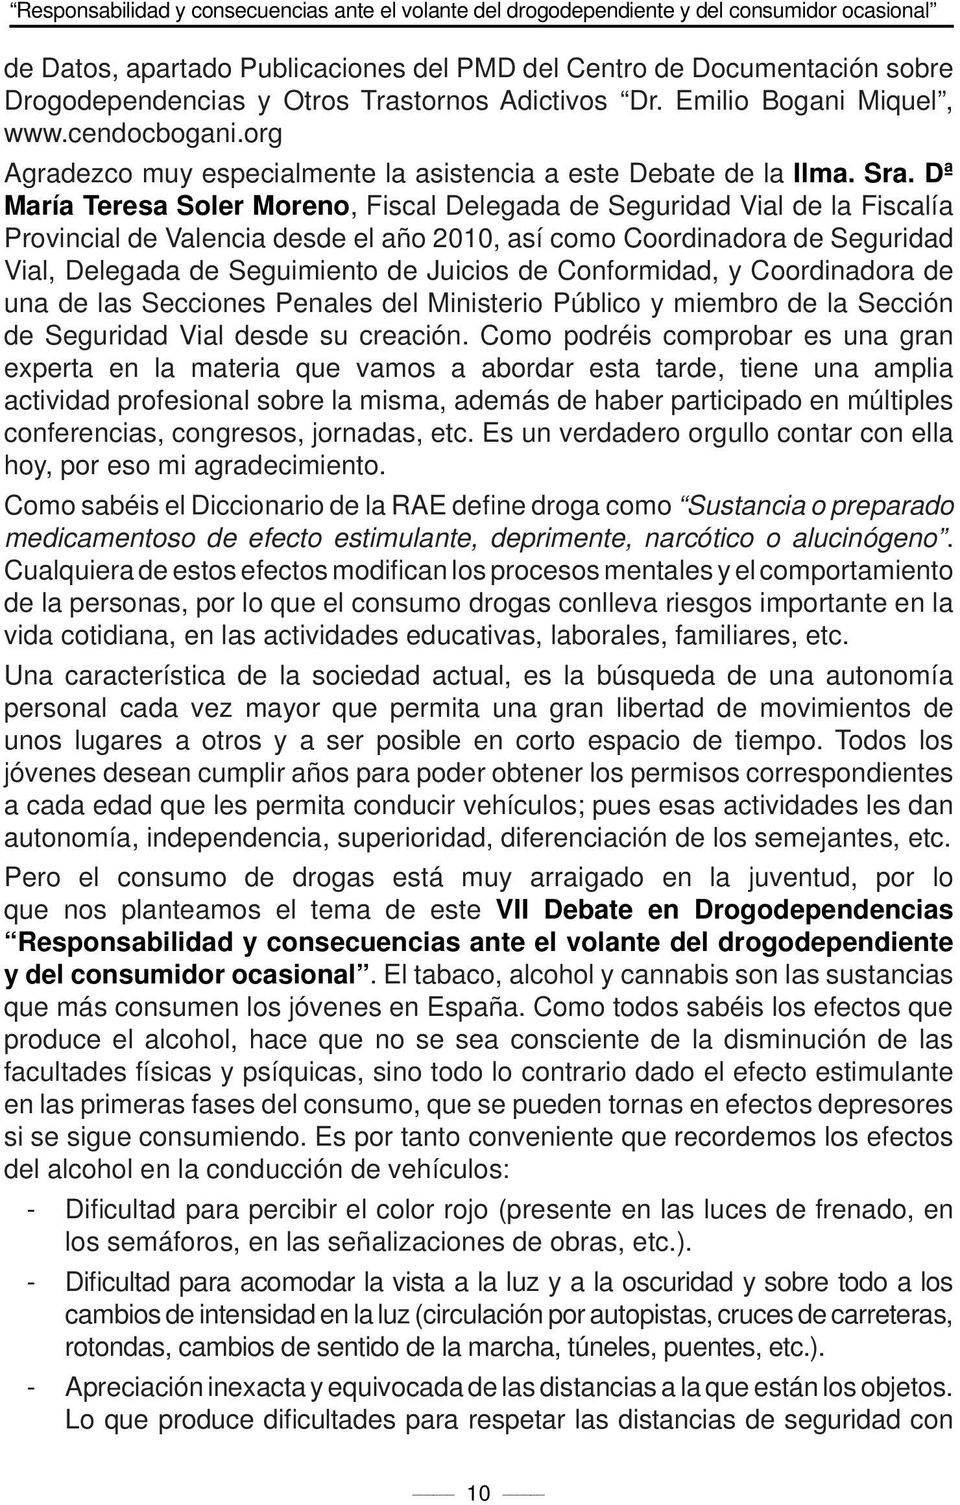 Dª María Teresa Soler Moreno, Fiscal Delegada de Seguridad Vial de la Fiscalía Provincial de Valencia desde el año 2010, así como Coordinadora de Seguridad Vial, Delegada de Seguimiento de Juicios de